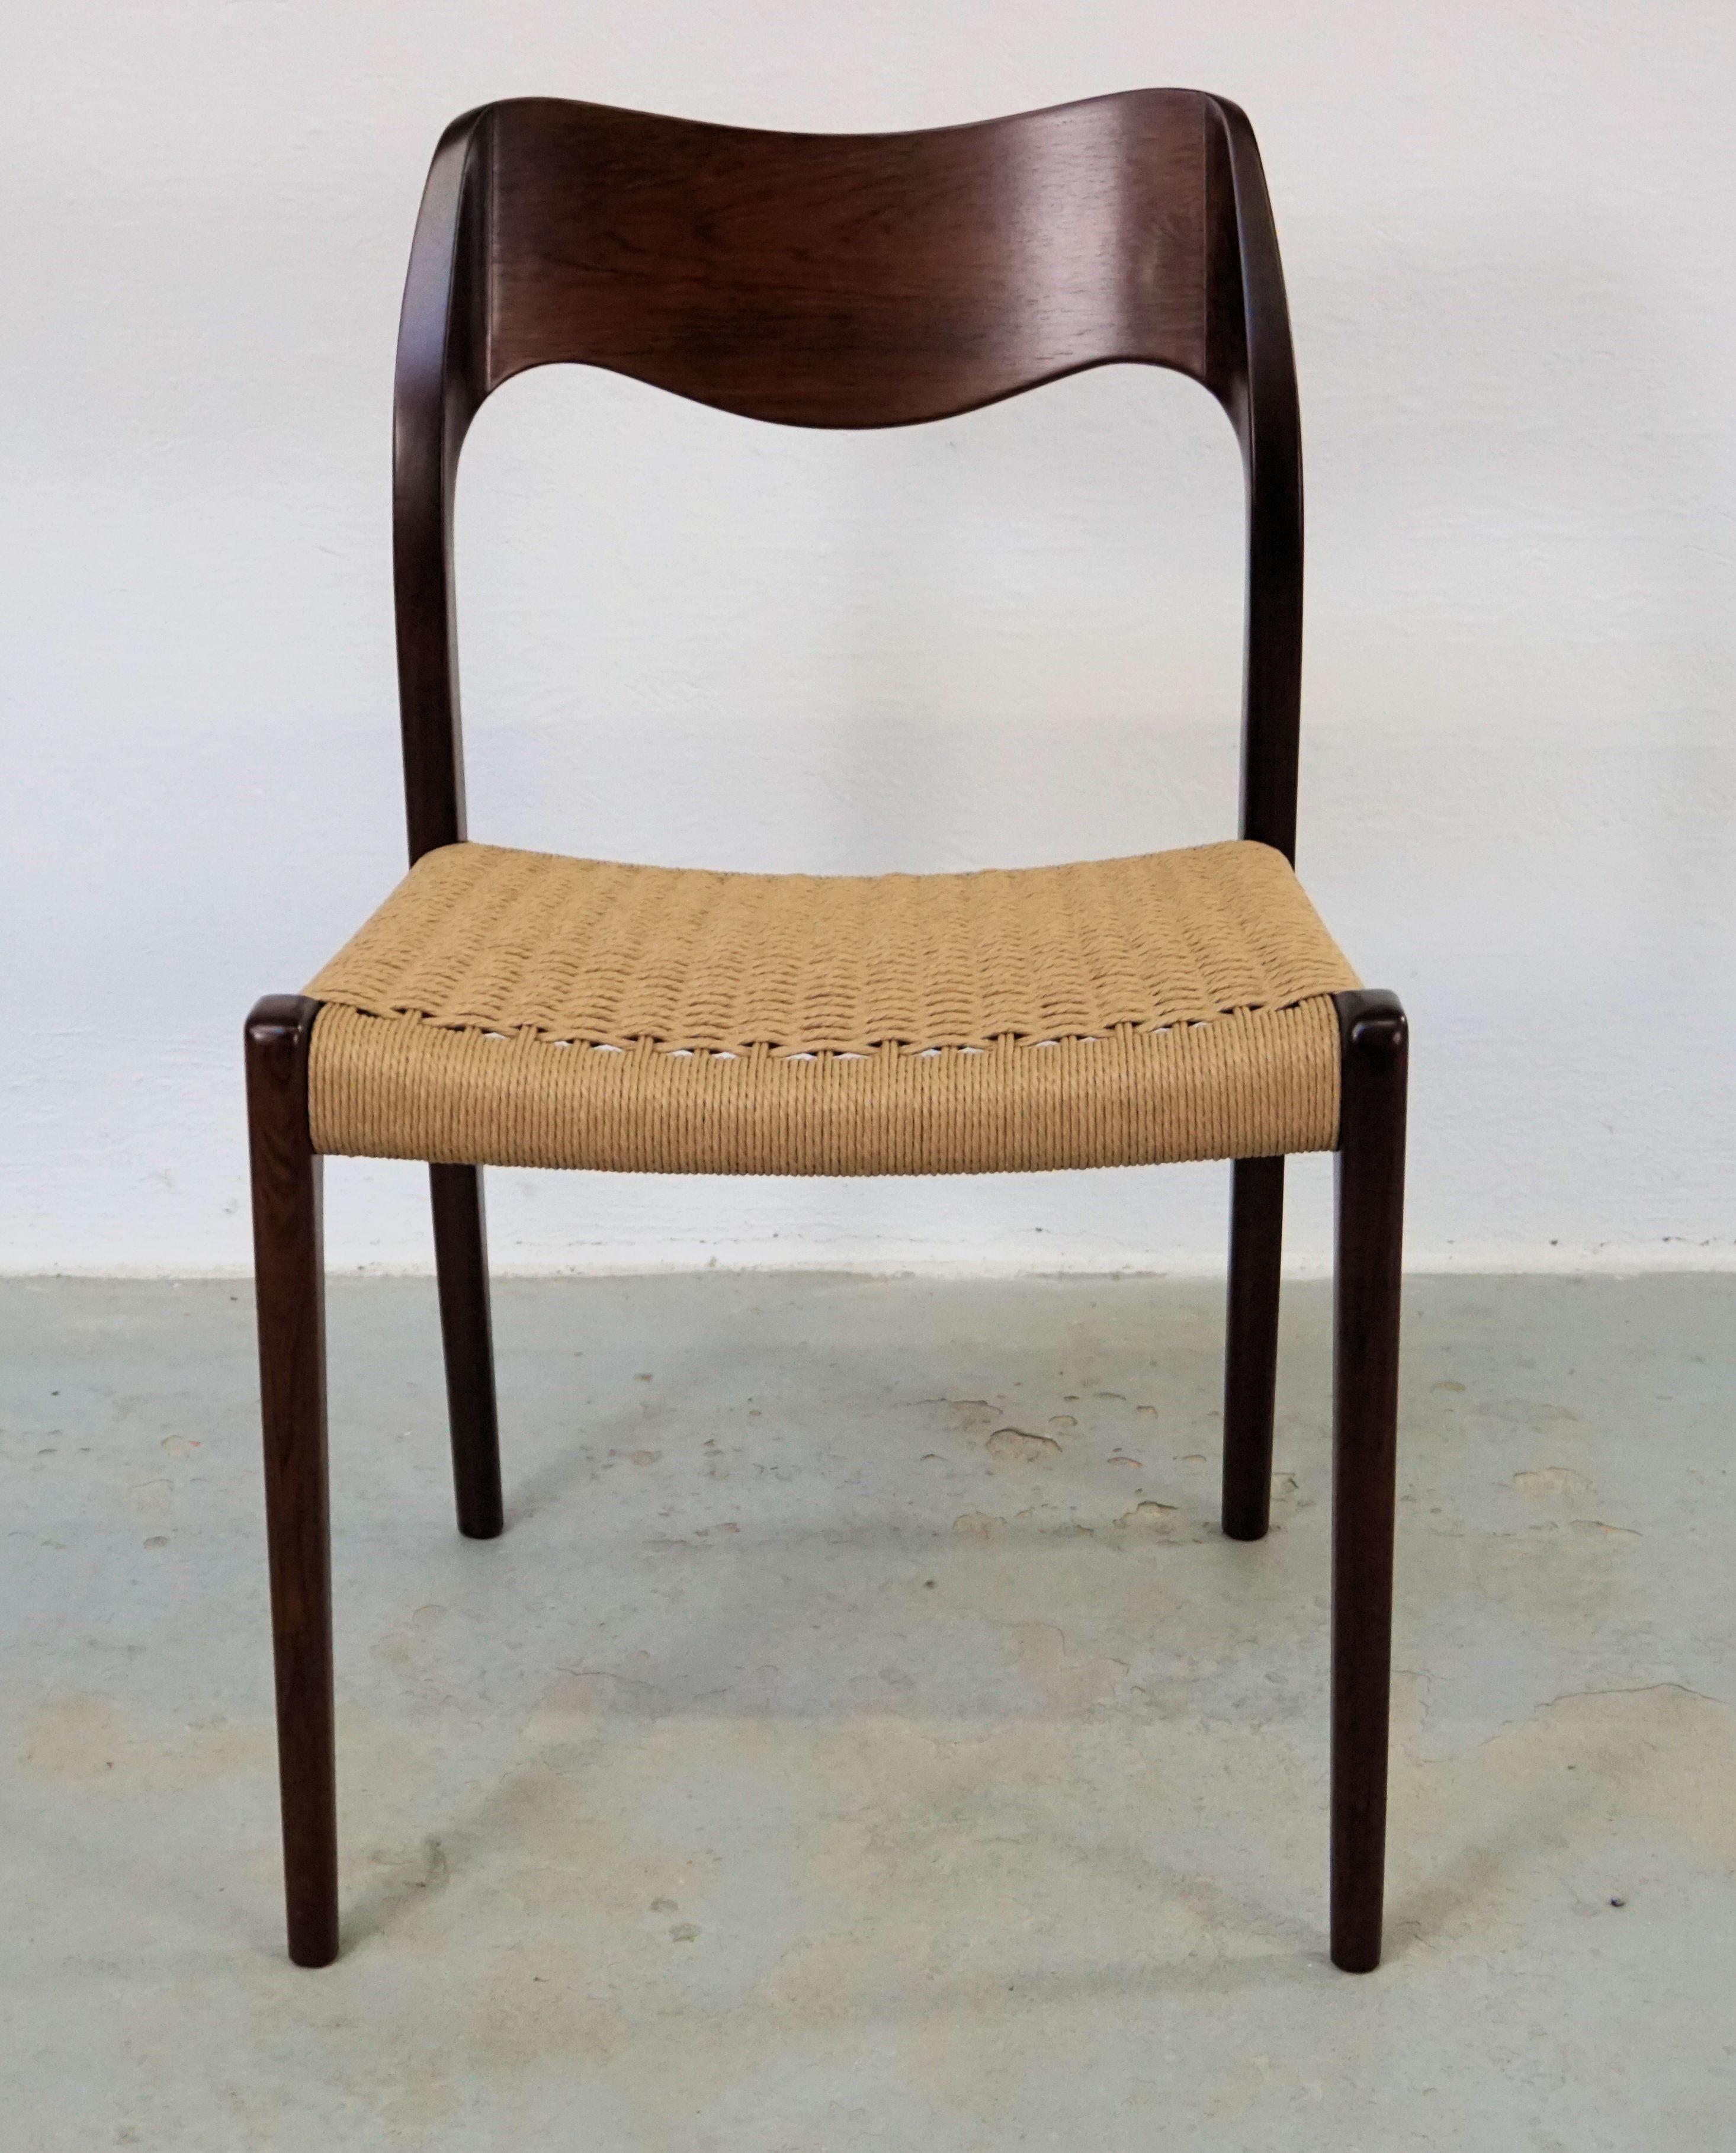 1960 Niels Otto Møller douze chaises de salle à manger en bois de rose avec de nouvelles assises en corde de papier conçues par Niels Otto Møller en 1951.

Les chaises sont dotées d'une structure solide et d'un dossier plaqué en bois de rose, avec